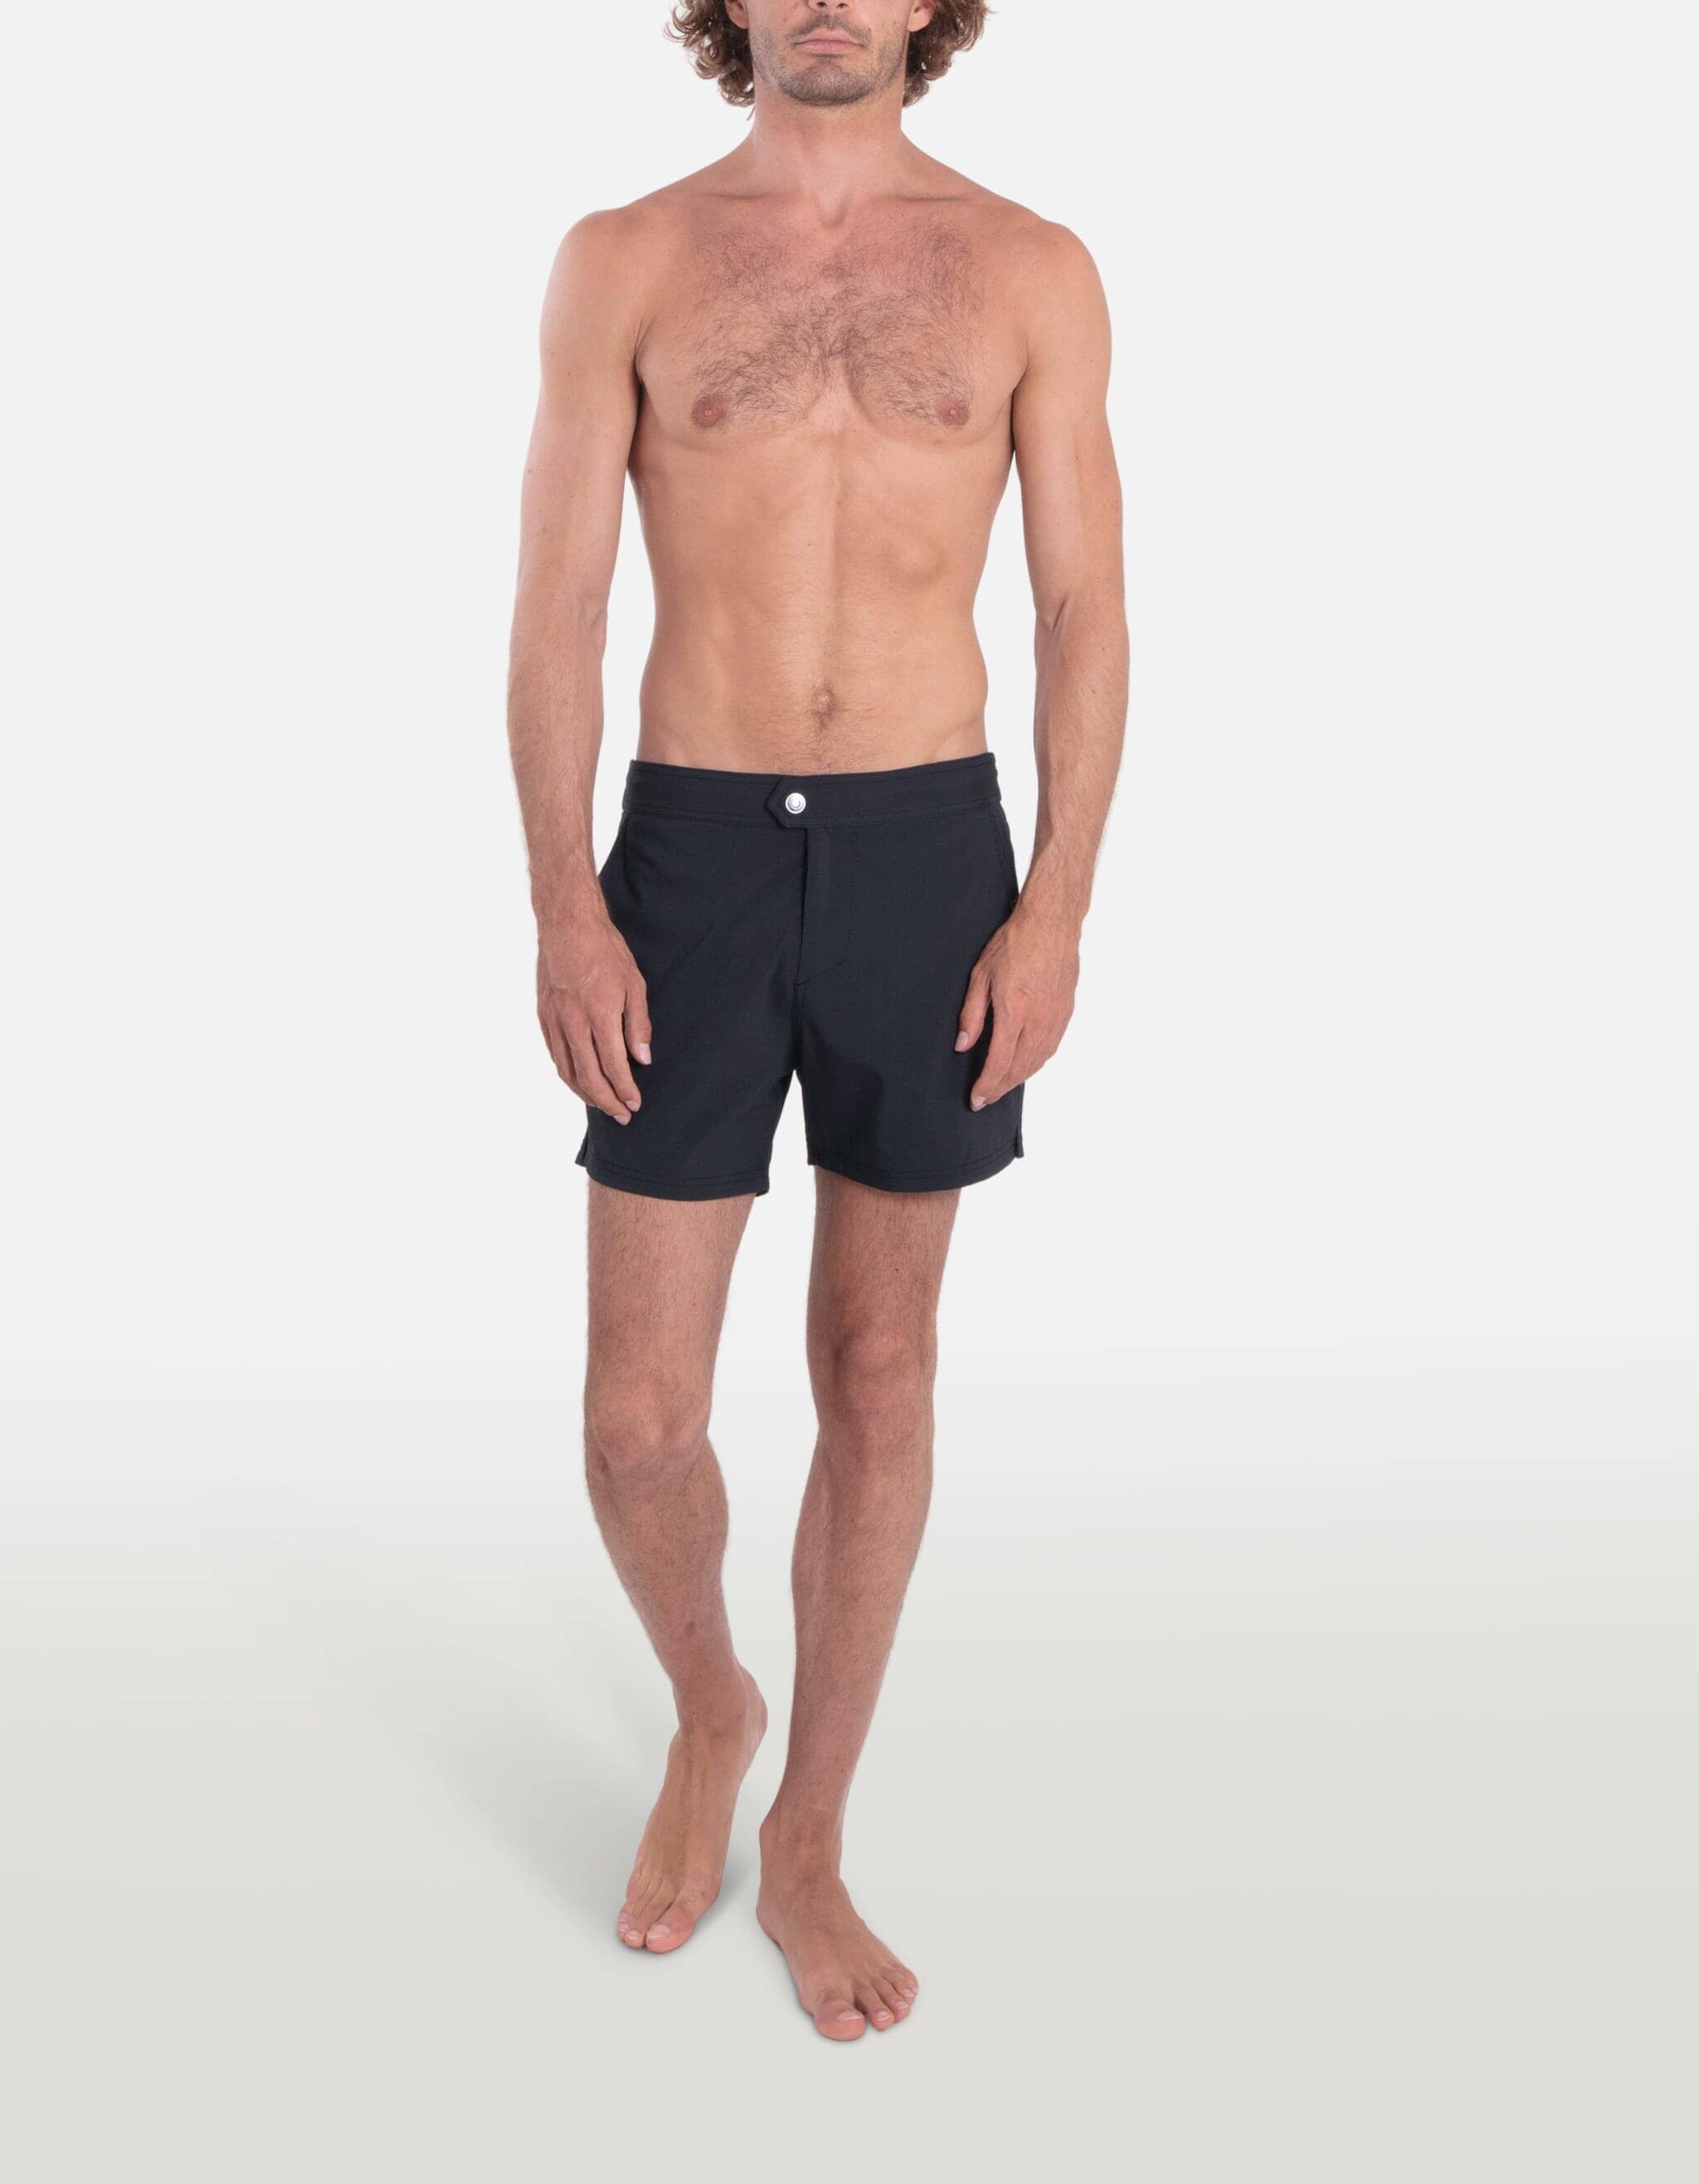 Ben - 00. Black Swim Shorts - Ben MACKEENE 